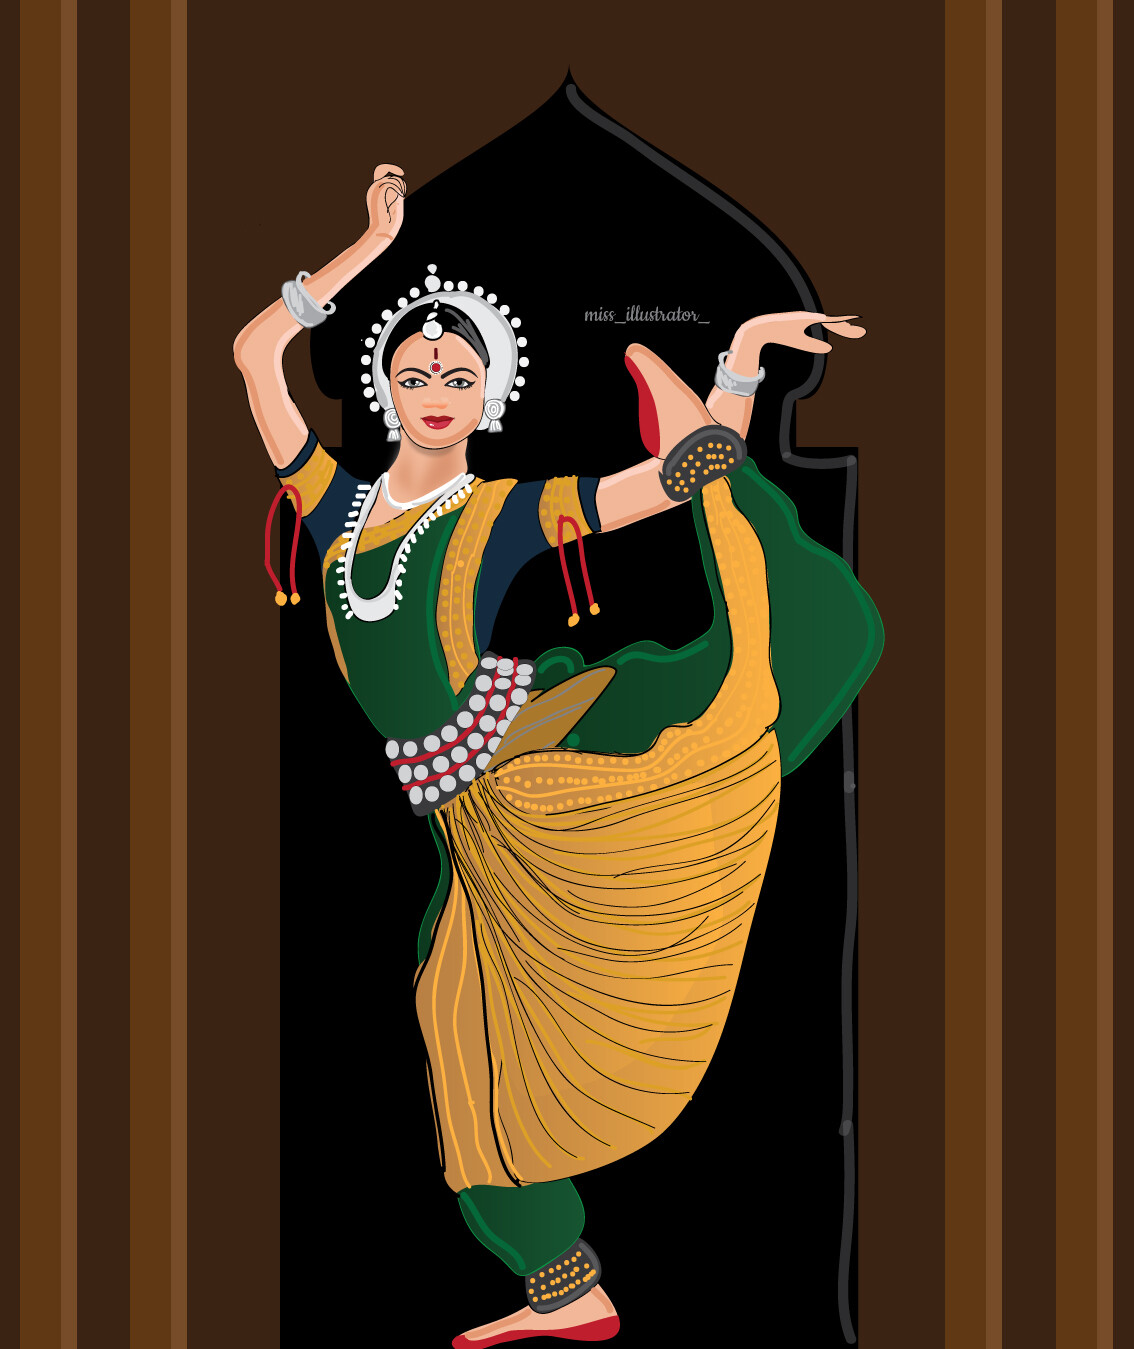 ArtStation - Illustration of odissi dancer